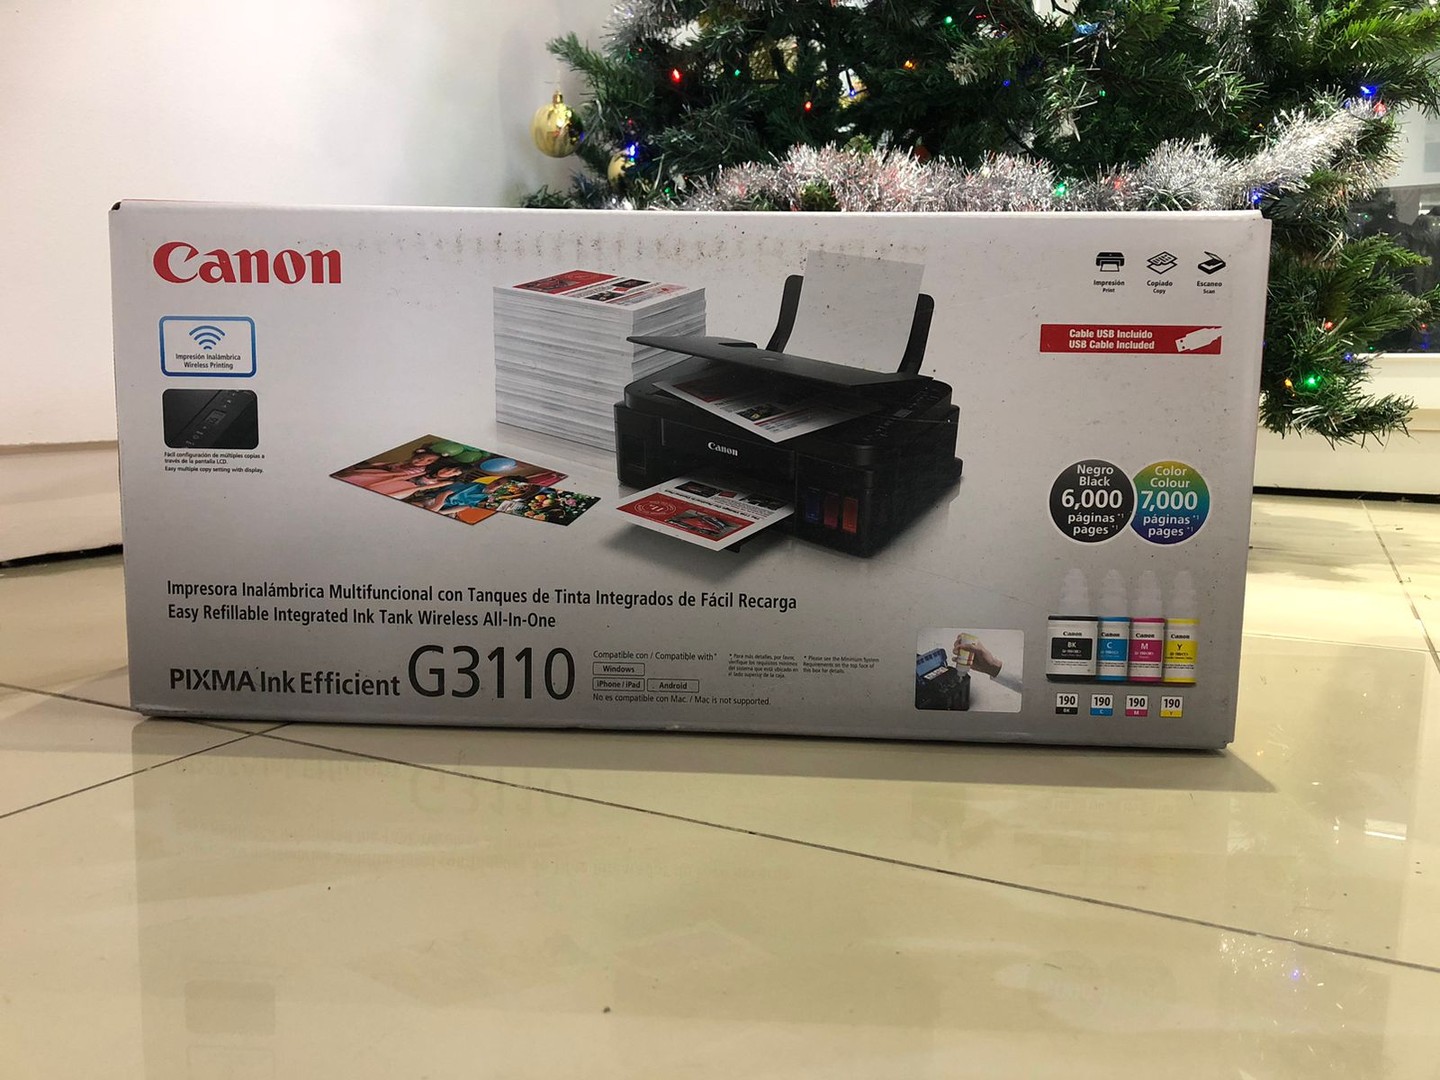 impresoras y scanners - Impresora Canon G3110 Multifuncional a Wifi Nueva y Sellada, Factura y Garantia 0